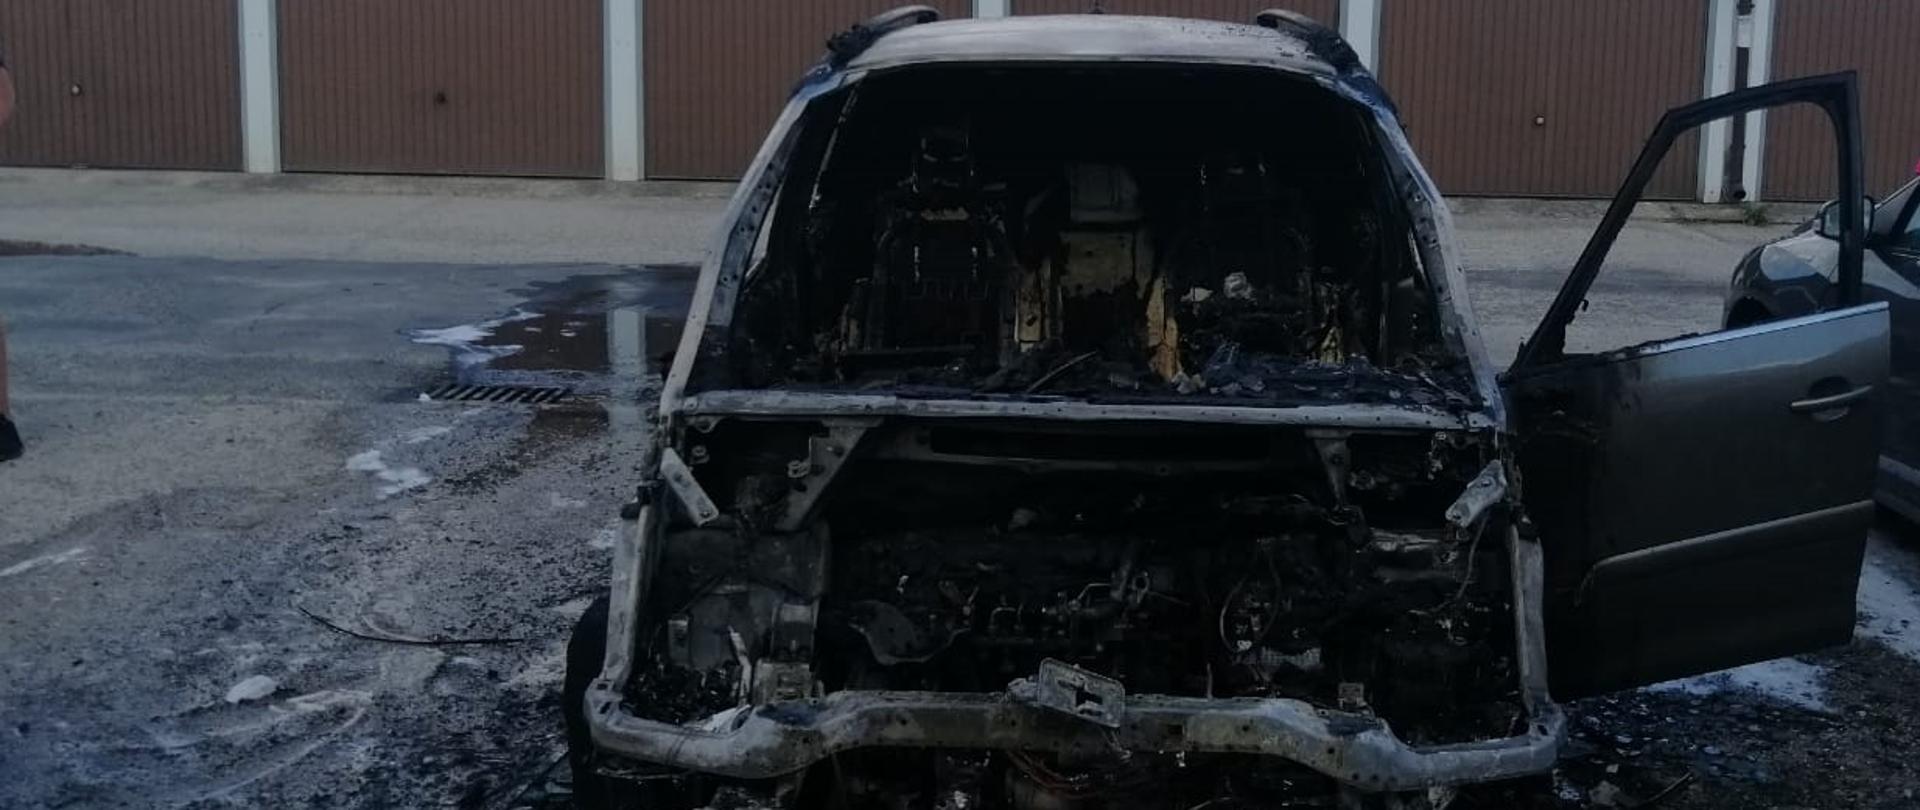 Widok z przodu na całkowicie spalą komorę silnika i wnętrze samochodu osobowego. W tle garaże.